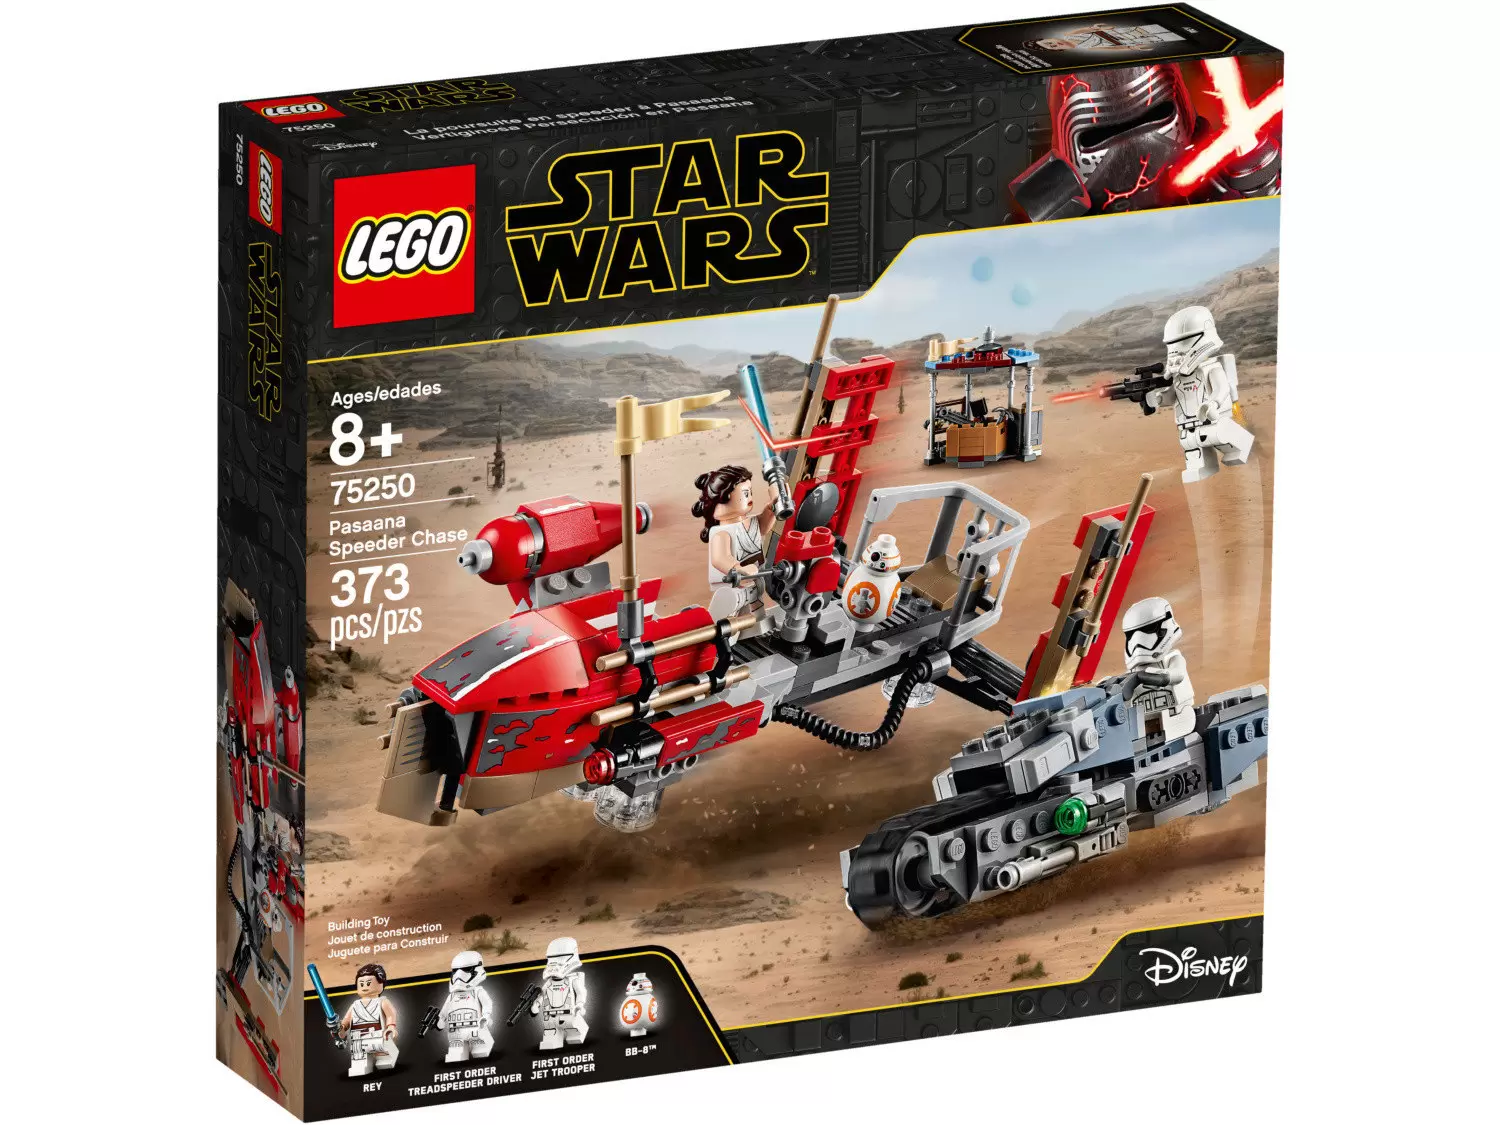 LEGO Star Wars - Pasaana Speeder Chase